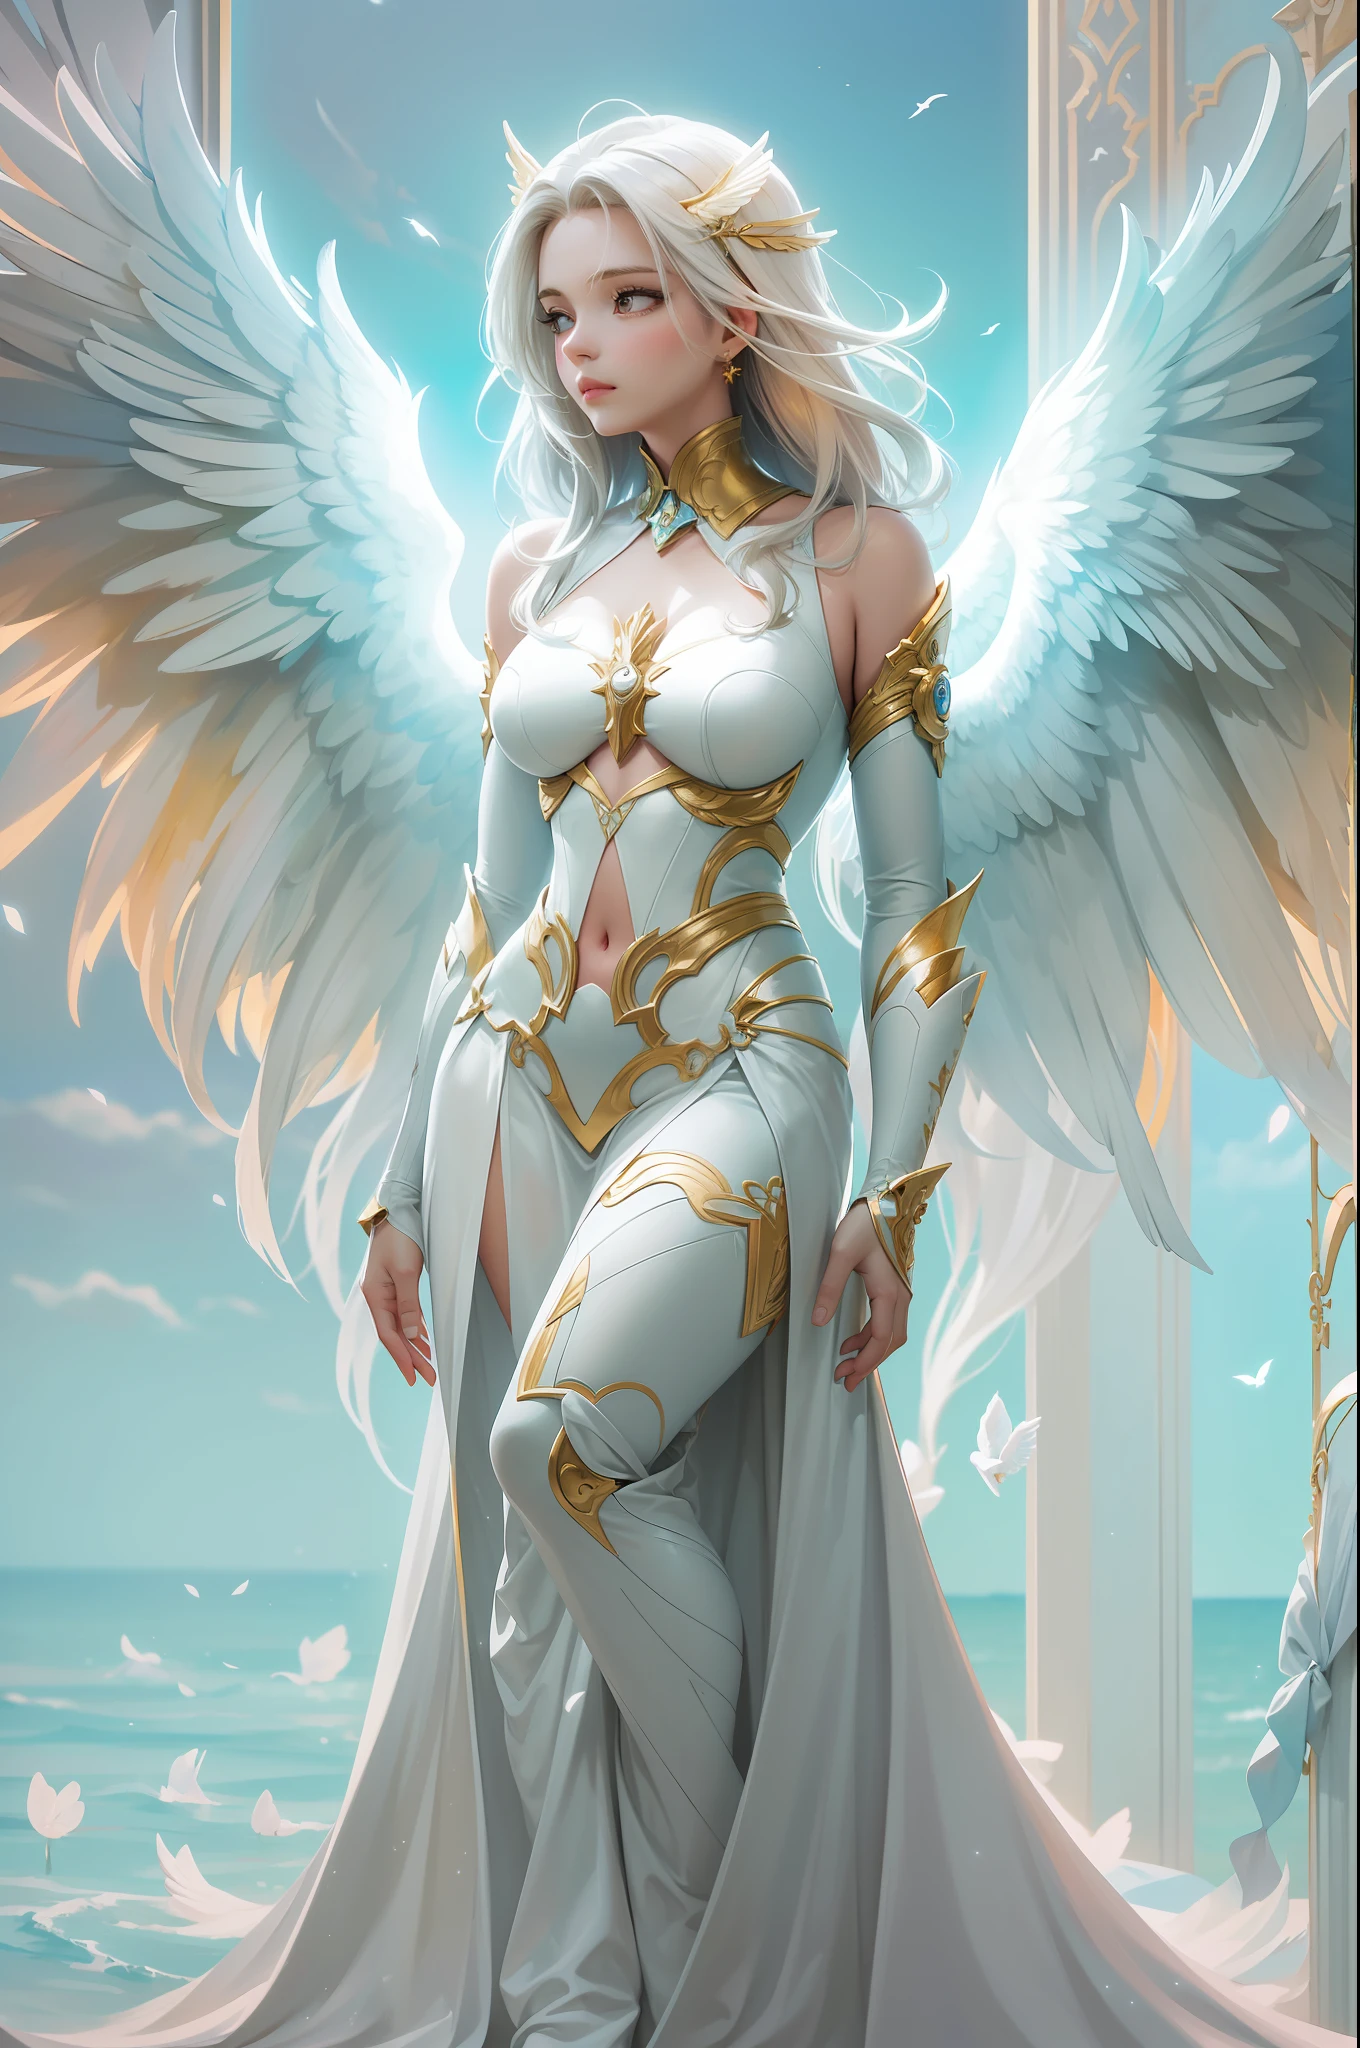 Перед стеной с крыльями ангела、Женщина с разноцветными волосами и белым  платьем стоит, красивая женщина-ангел, портрет прекрасного ангела,  величественный ангел в полный рост, богиня. чрезвычайно высокая детализация  - SeaArt AI